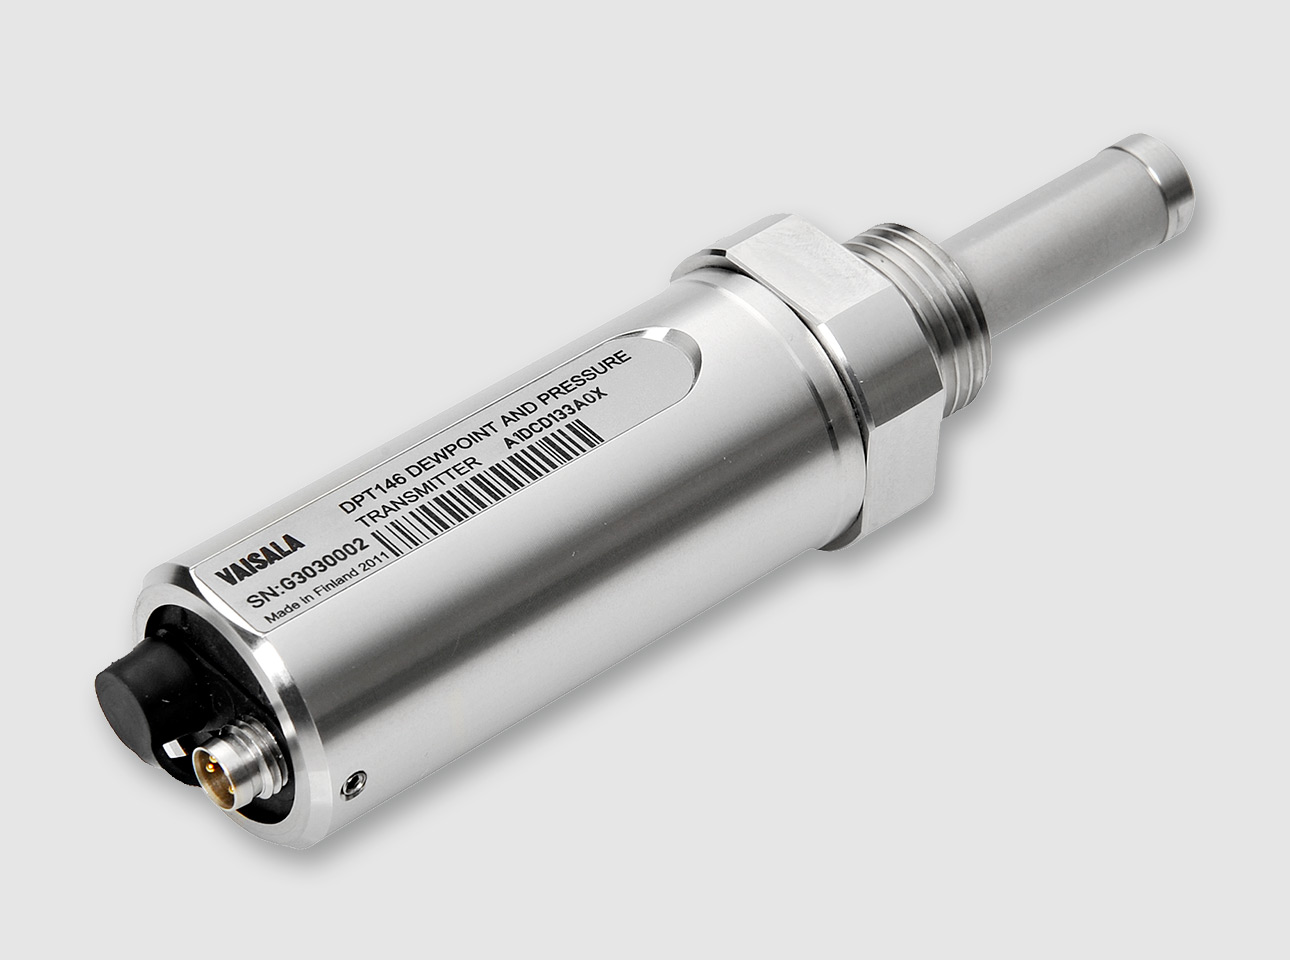 VAISALA的DPT146用于压缩空气测量的露点传感器是同时测量过程压力的露点检测器。